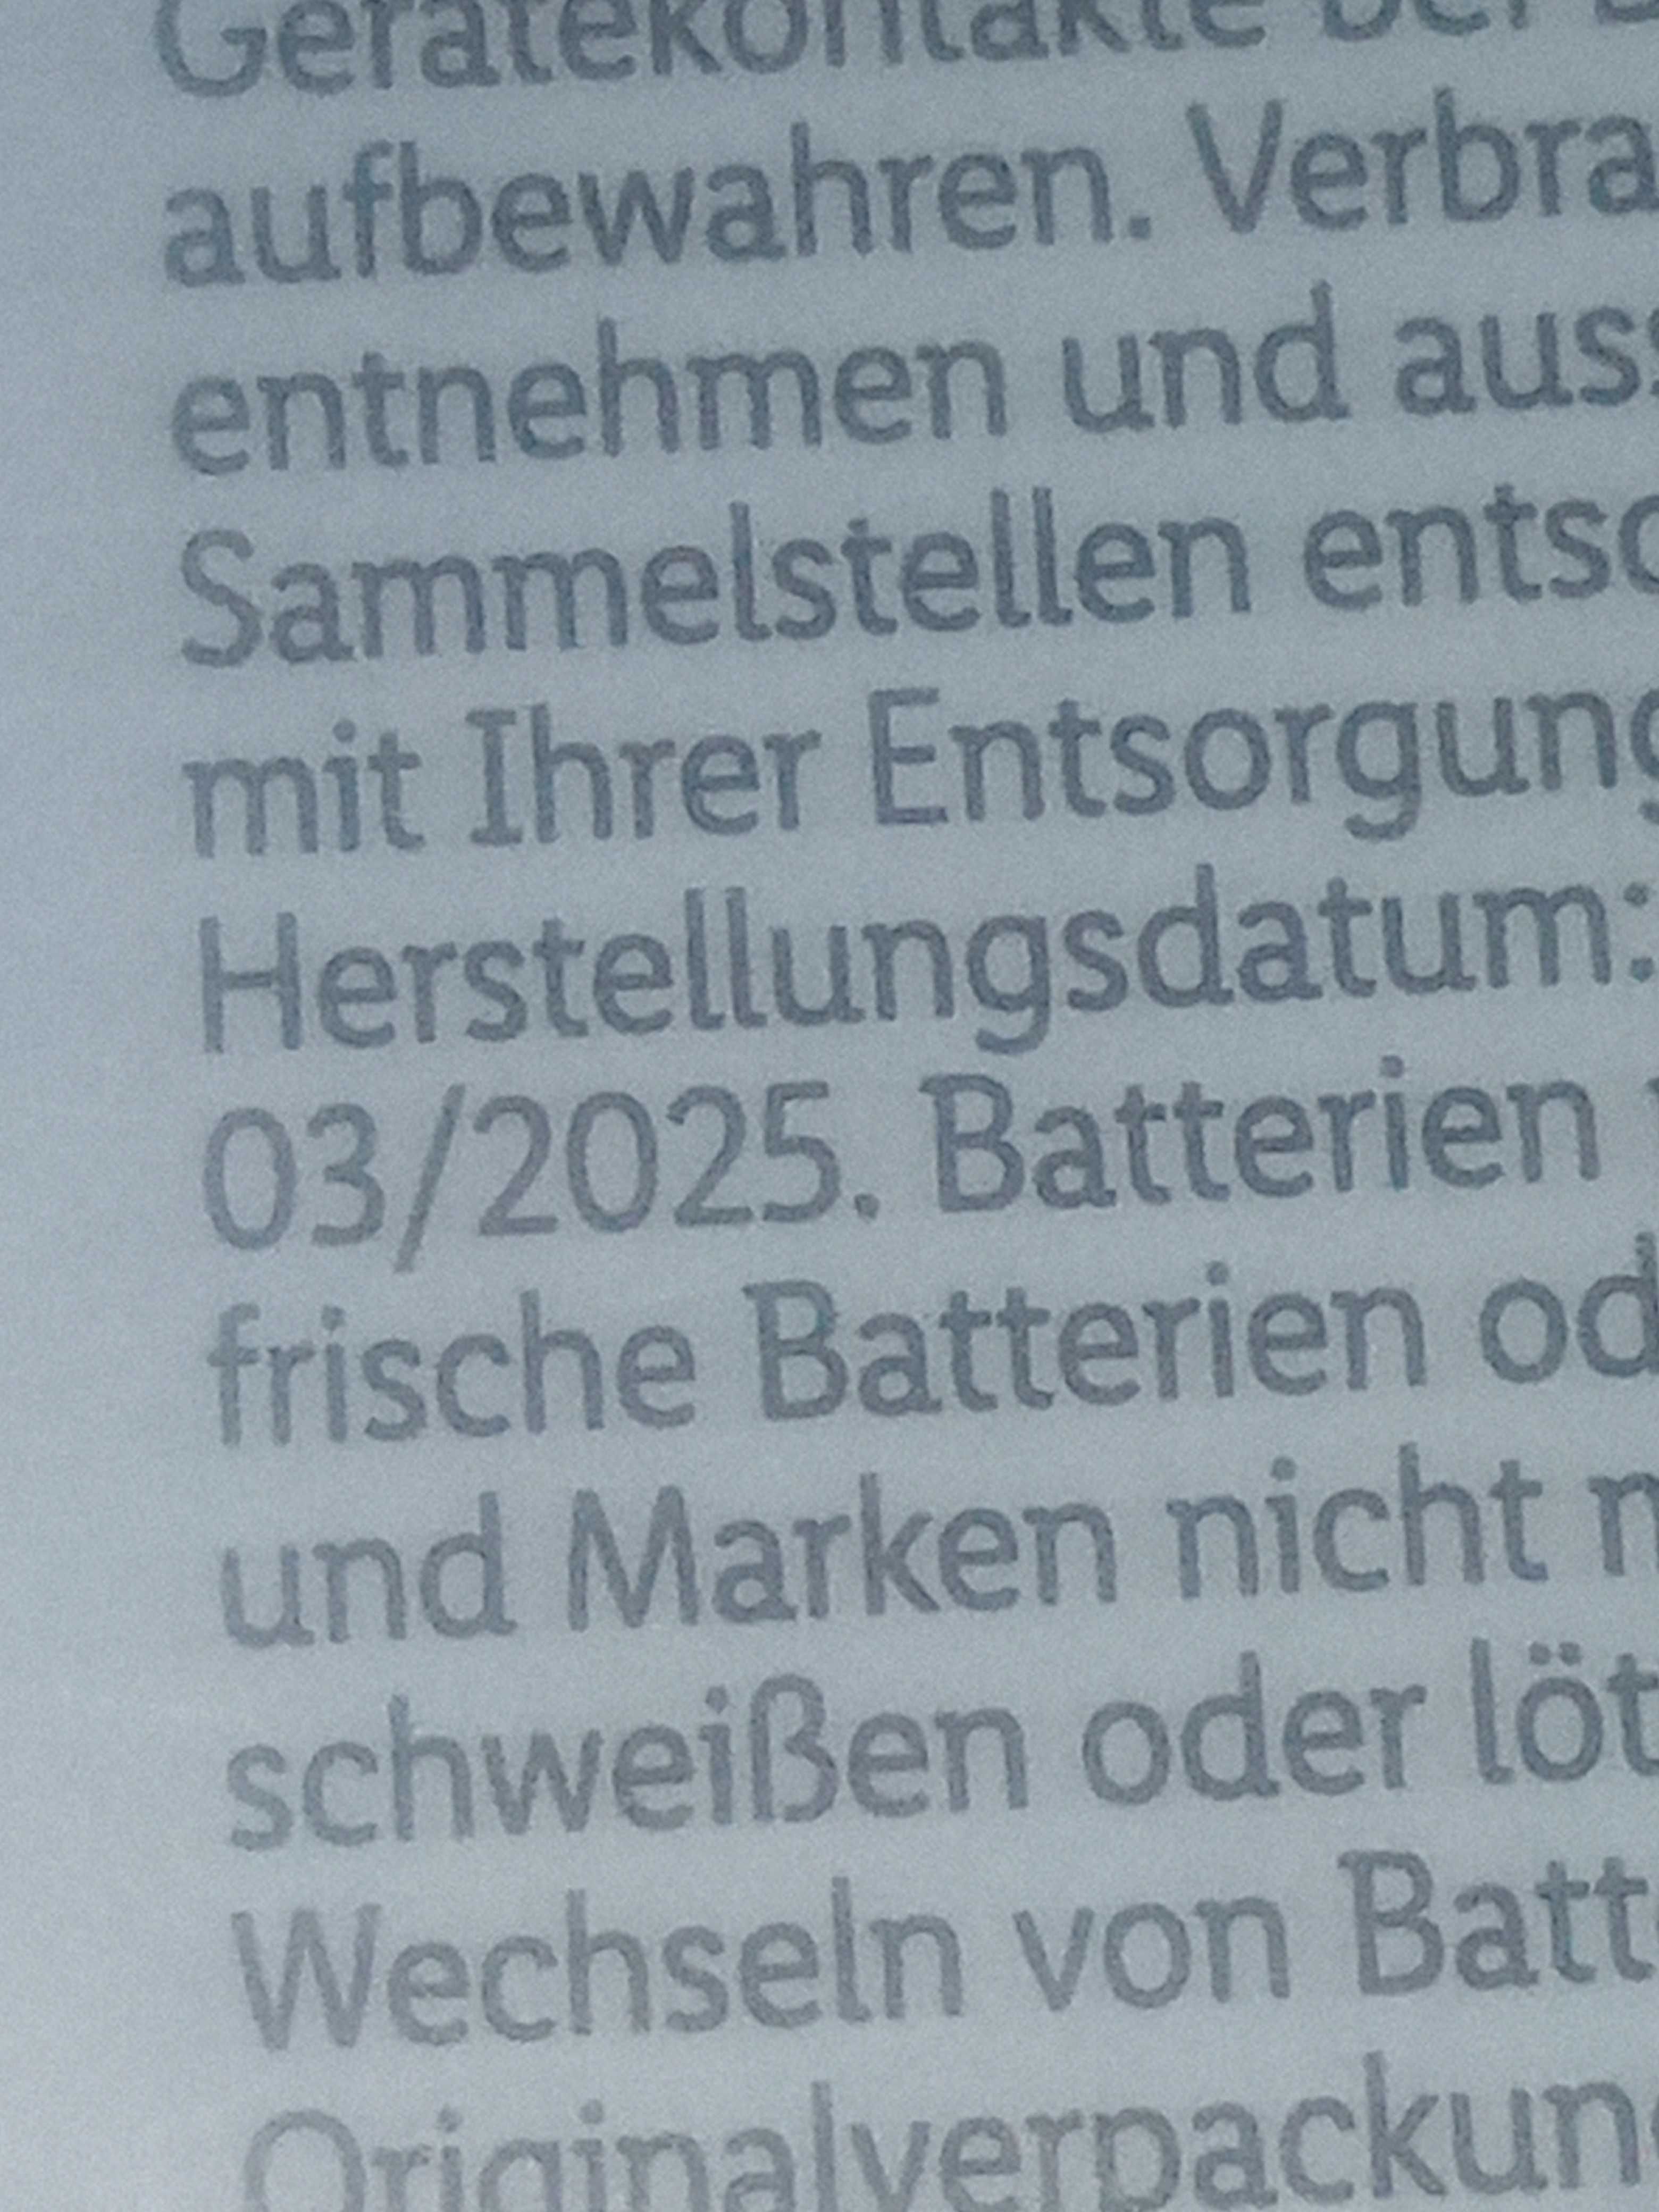 Батарейка TRONIC CR 2025 Lithium, 3V, 6 штук  Німеччина